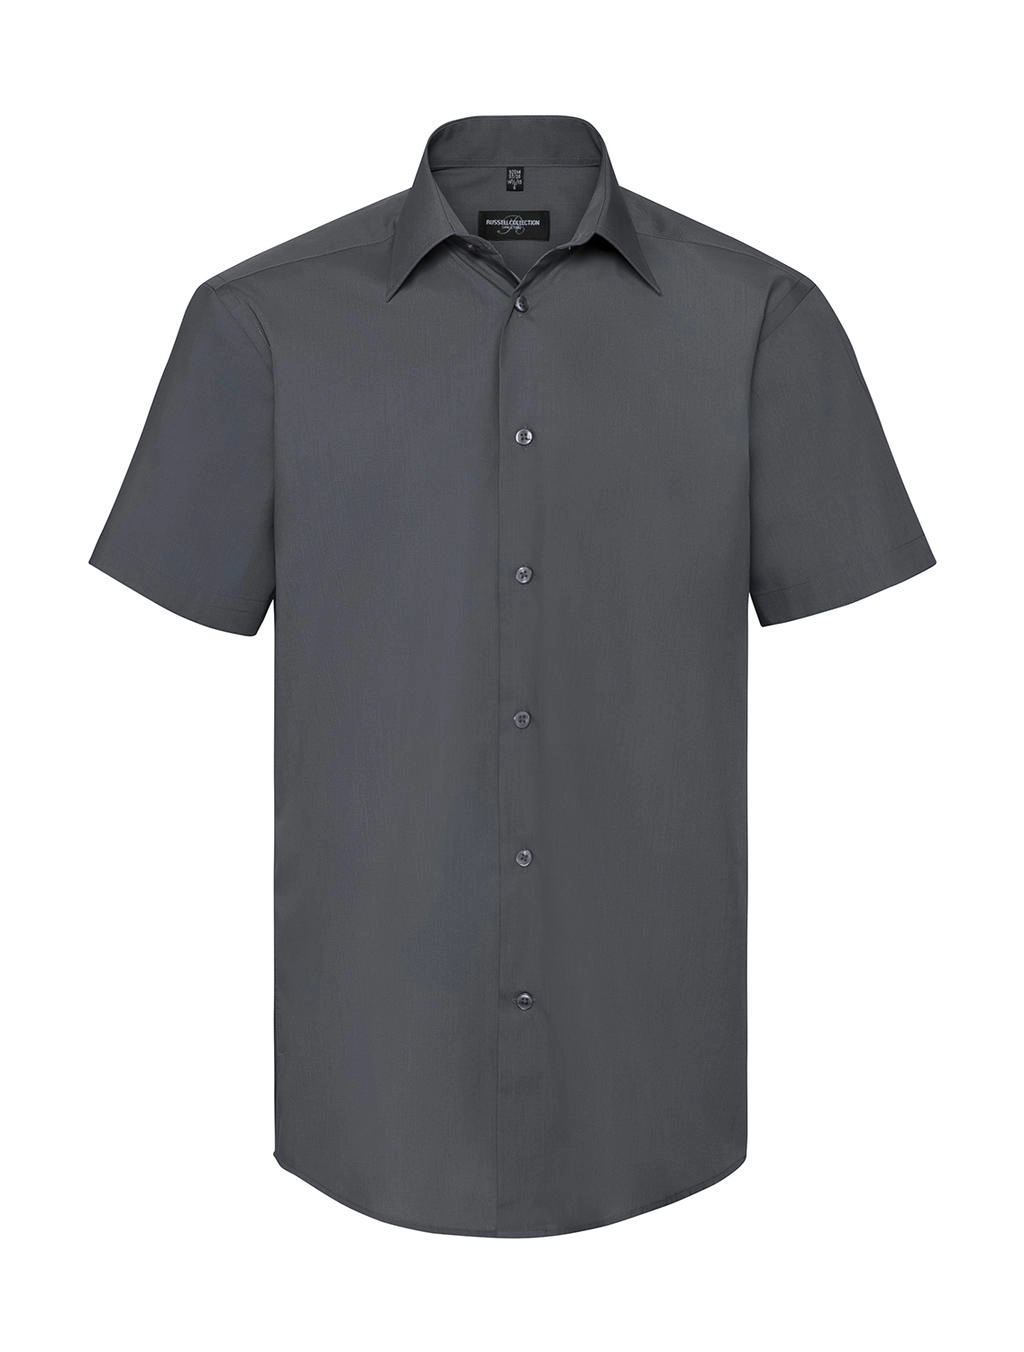 Tailored Poplin Shirt zum Besticken und Bedrucken in der Farbe Convoy Grey mit Ihren Logo, Schriftzug oder Motiv.